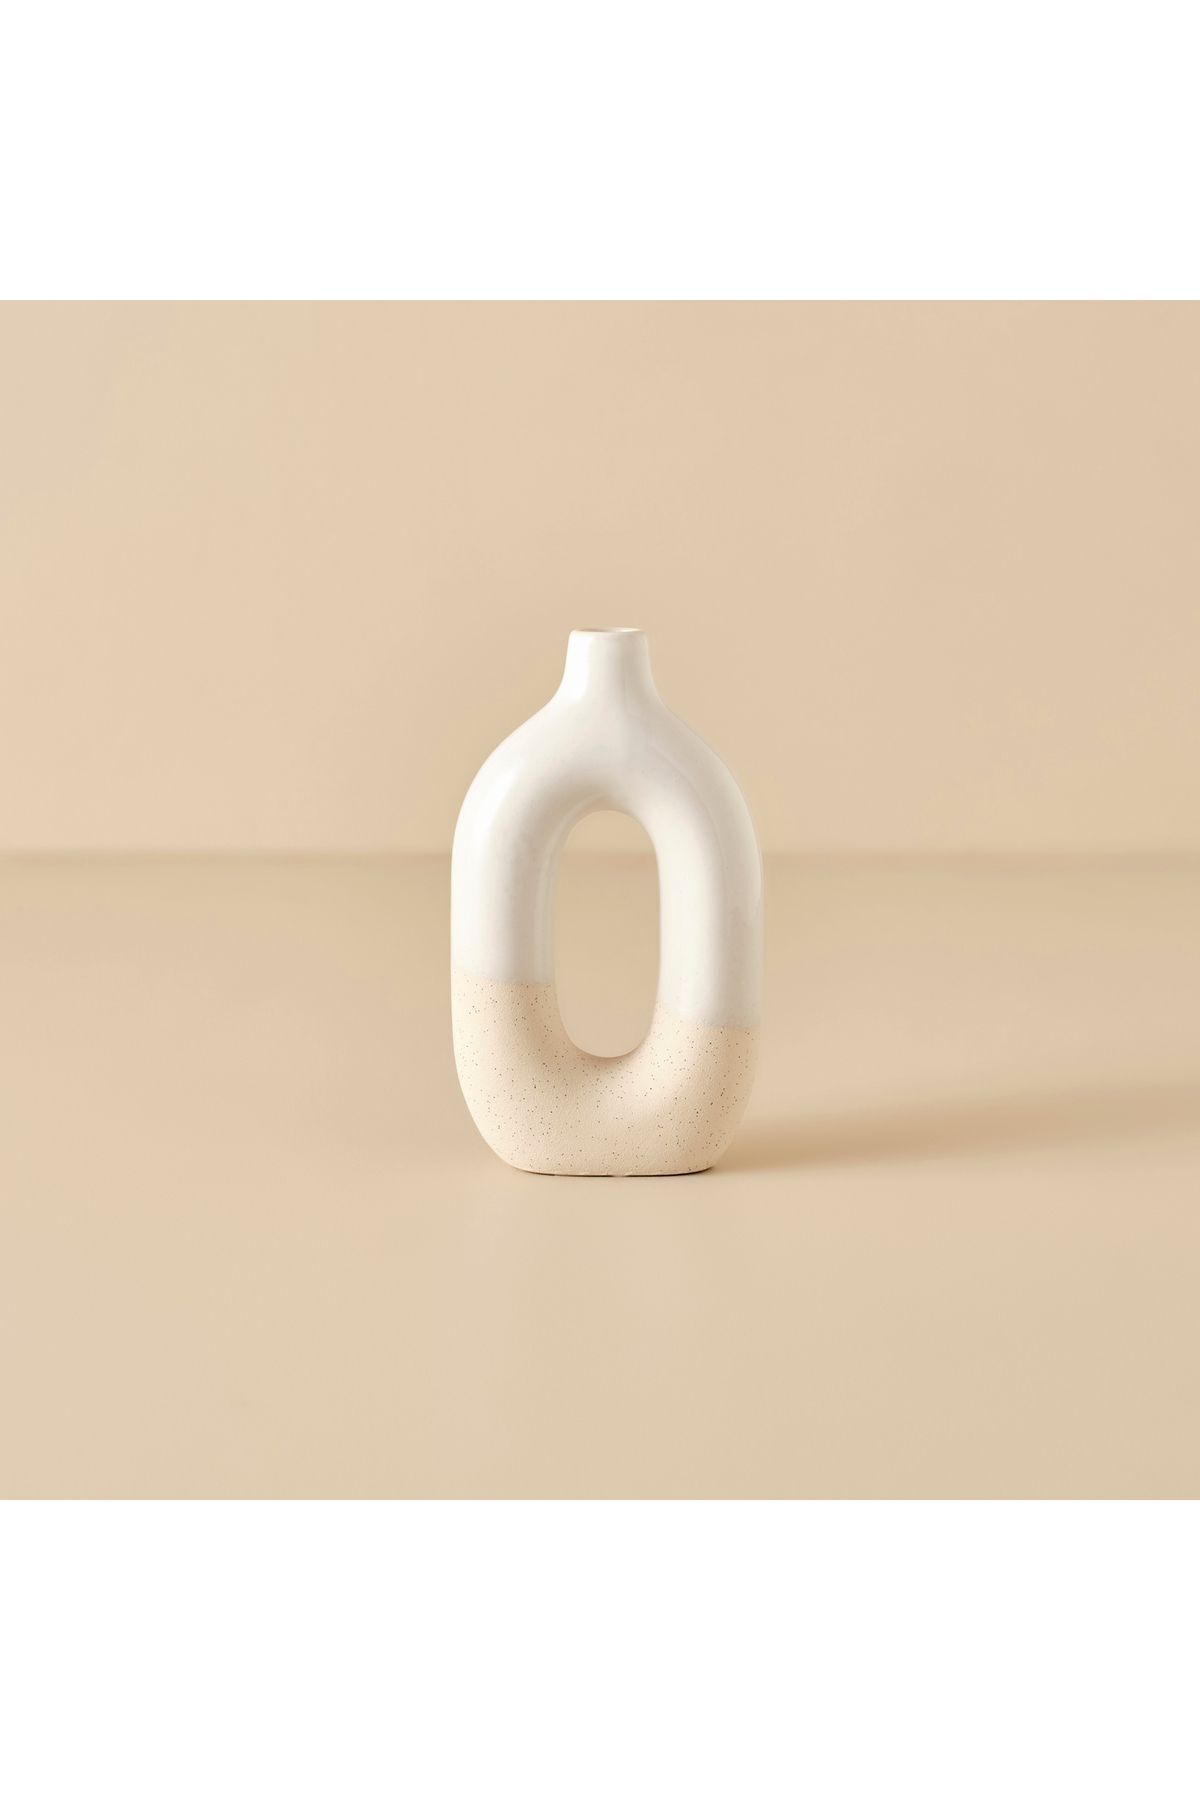 Bella Maison Nelly Керамическая ваза песочно-бежевый (13x5x23 см) 2002VAZO0347